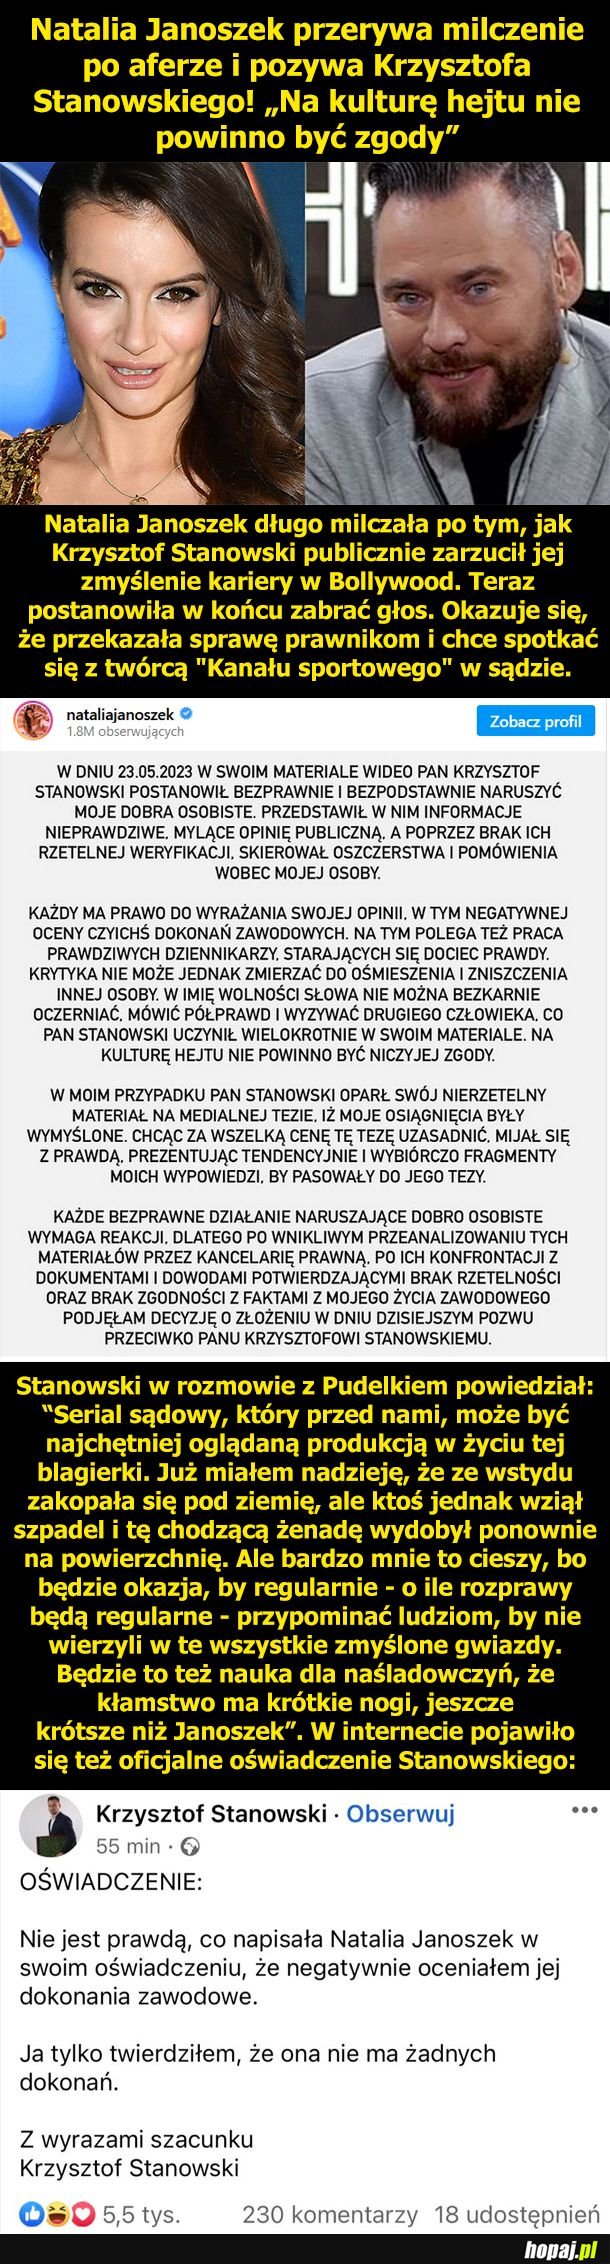 Natalia Janoszek pozywa Krzysztofa Stanowskiego